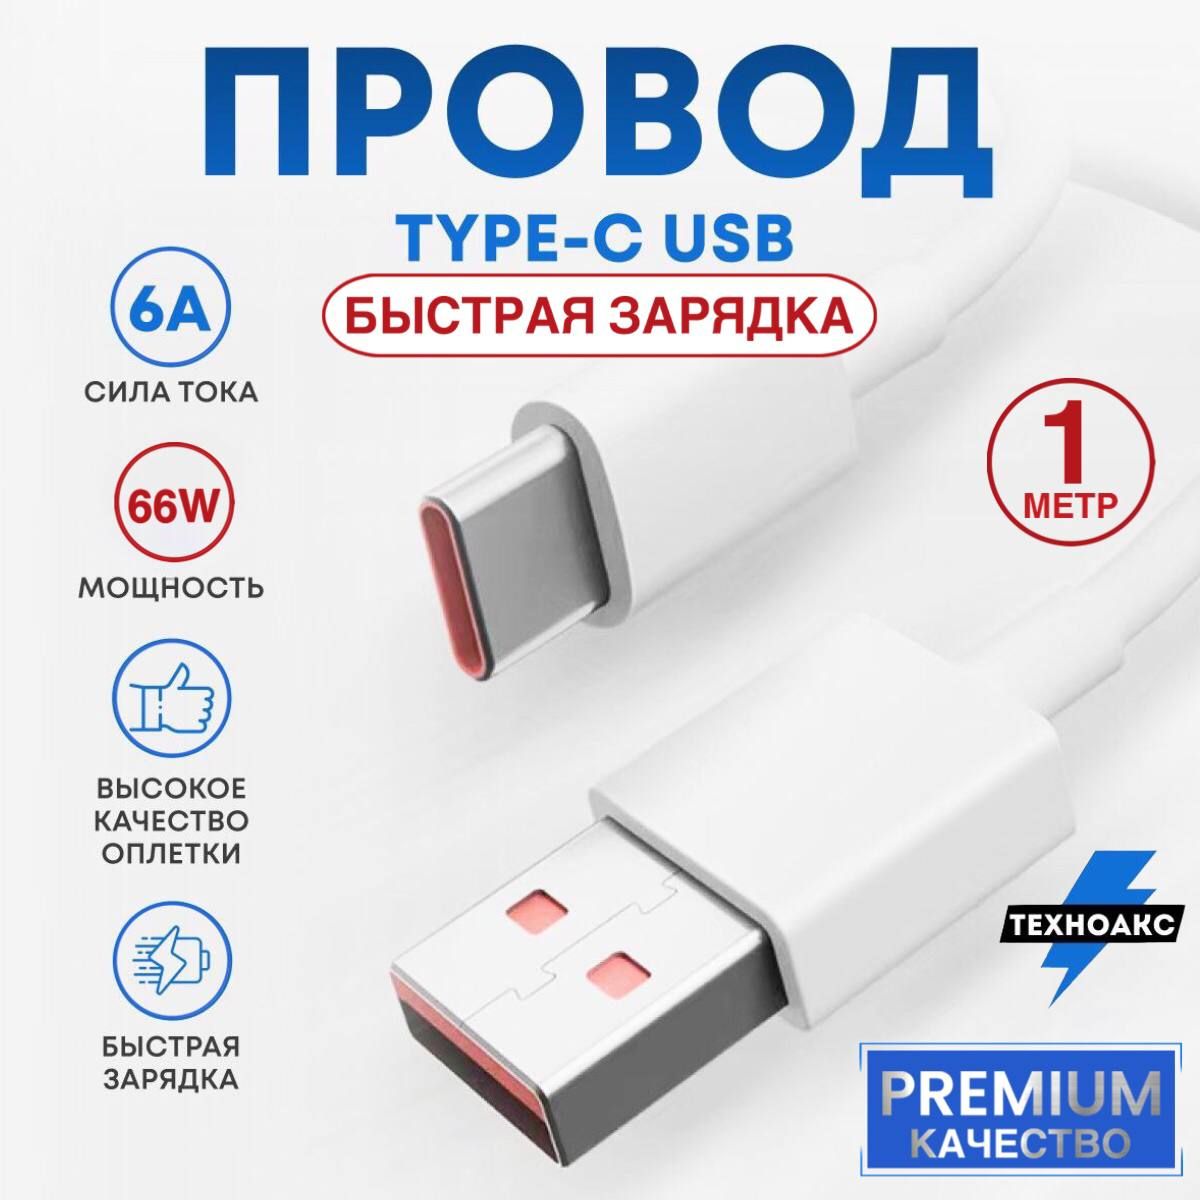 Type-C-USB6A/66Wпроводдлябыстройзарядкиипередачиданных